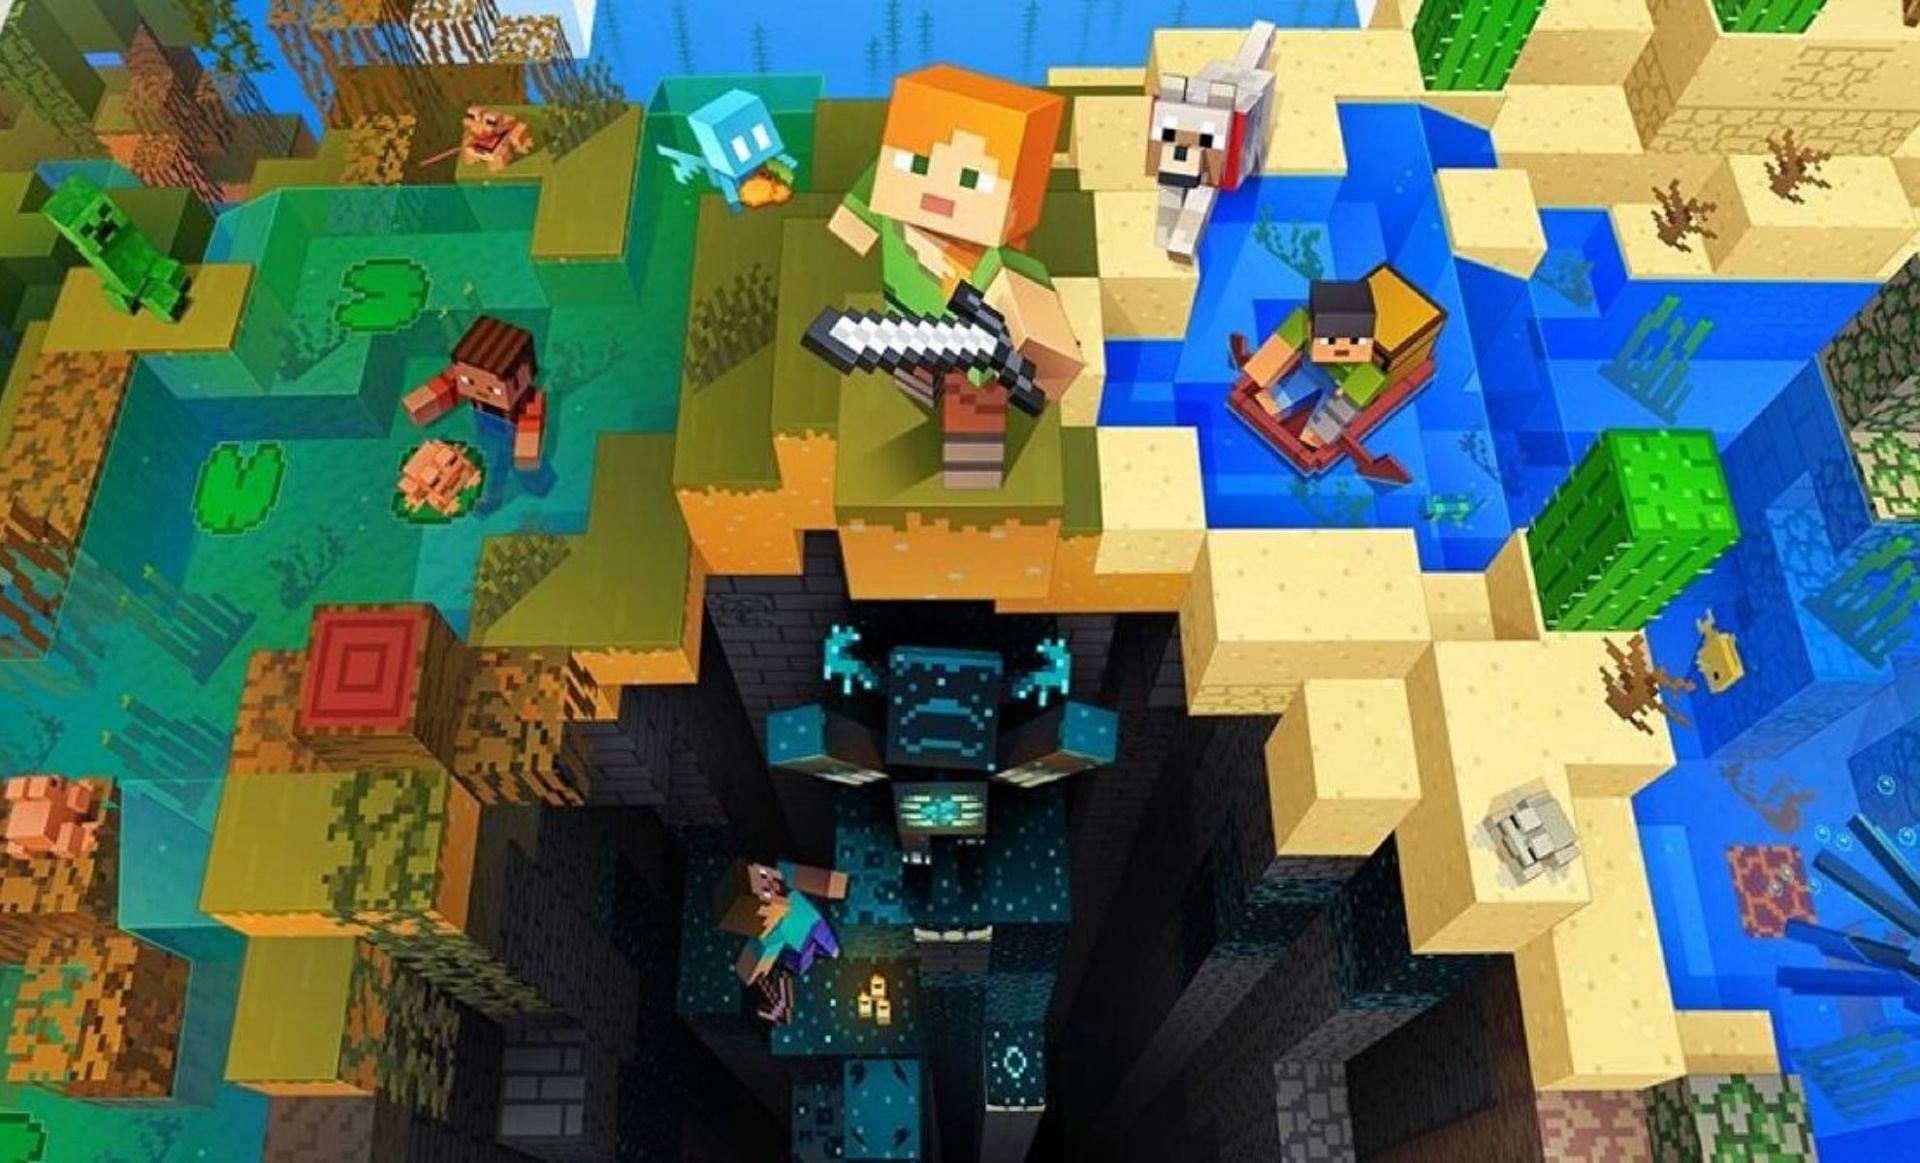 Download Minecraft 1.19.21 apk free Release: Wild Update